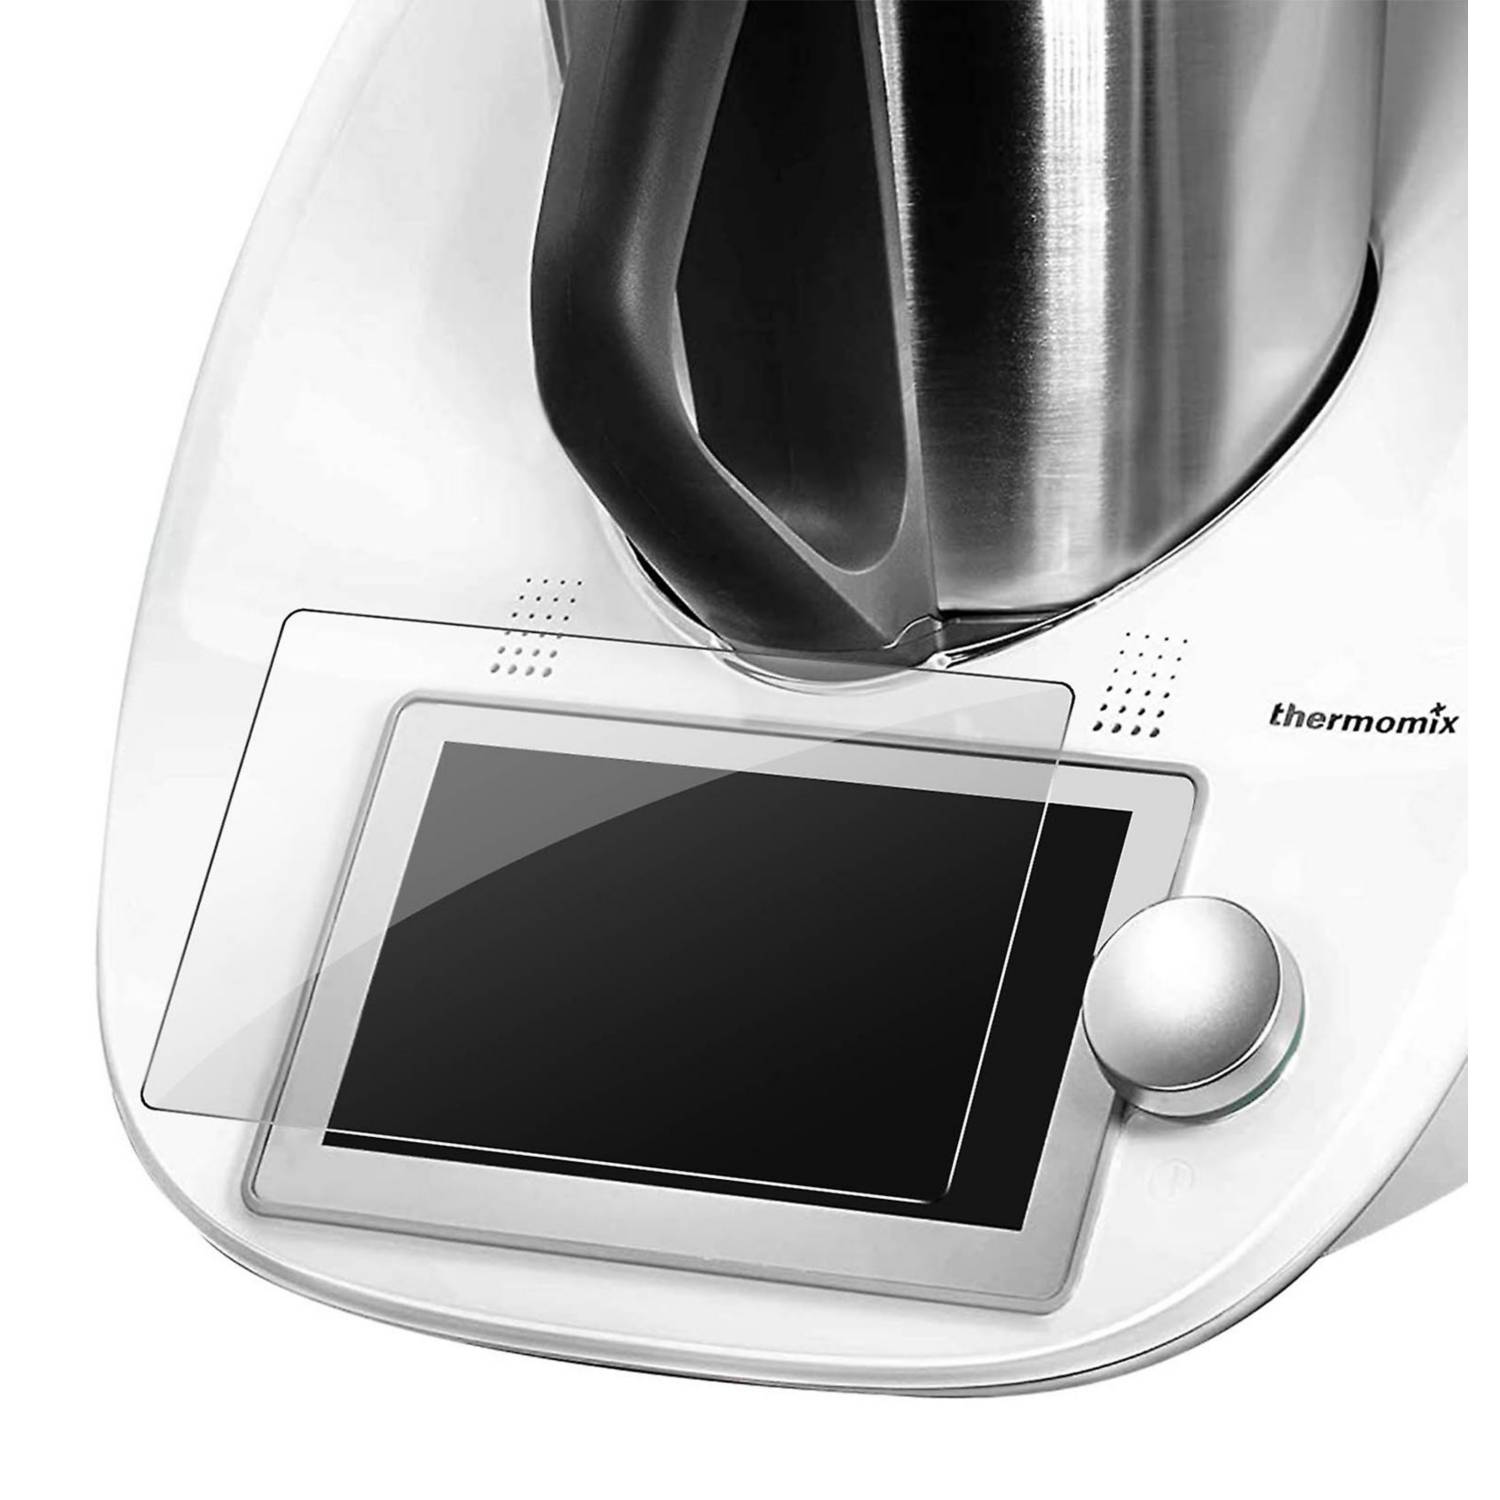 VIDRIO HÍBRIDO - Protector de pantalla para Thermomix TM6 - Thermomix